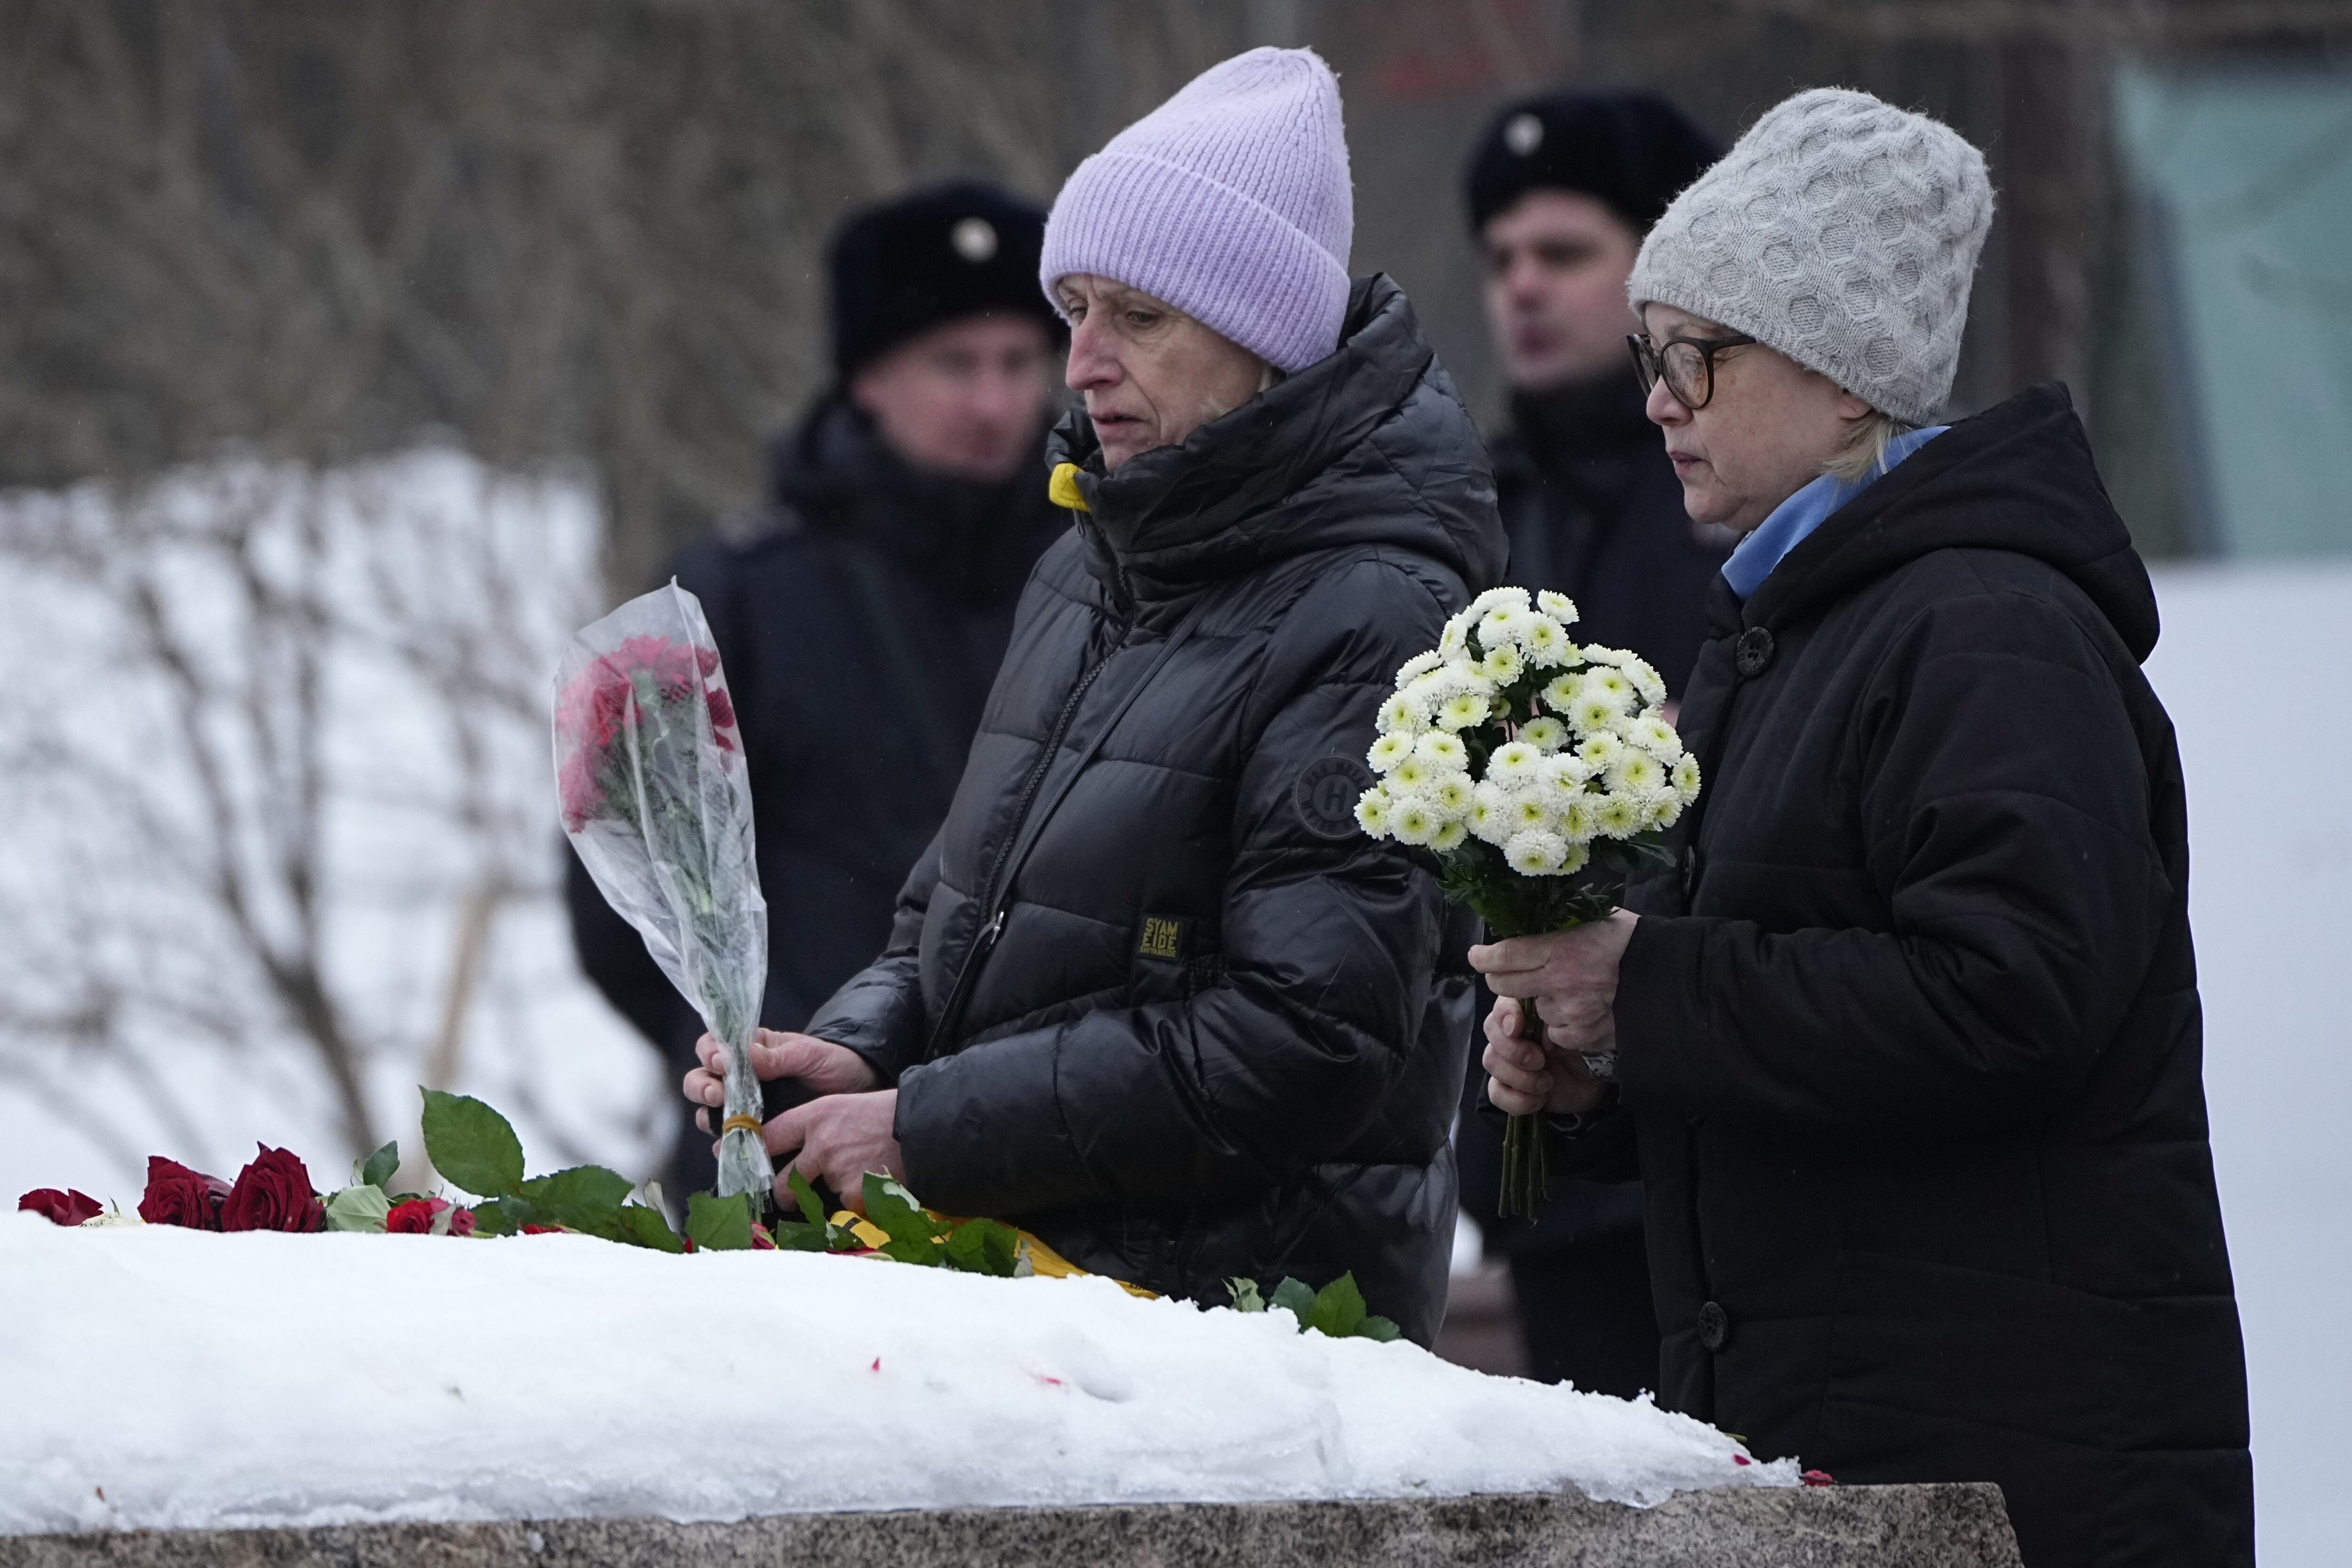 Las mujeres depositan flores para rendir homenaje a Alexei Navalny en el monumento, una gran roca de las islas Solovetsky, donde se estableció el primer campo del sistema de prisiones políticas Gulag, cerca del histórico edificio del Servicio Federal de Seguridad (FSB, sucesor de la KGB soviética) en Moscú, Rusia, el 24 de febrero 